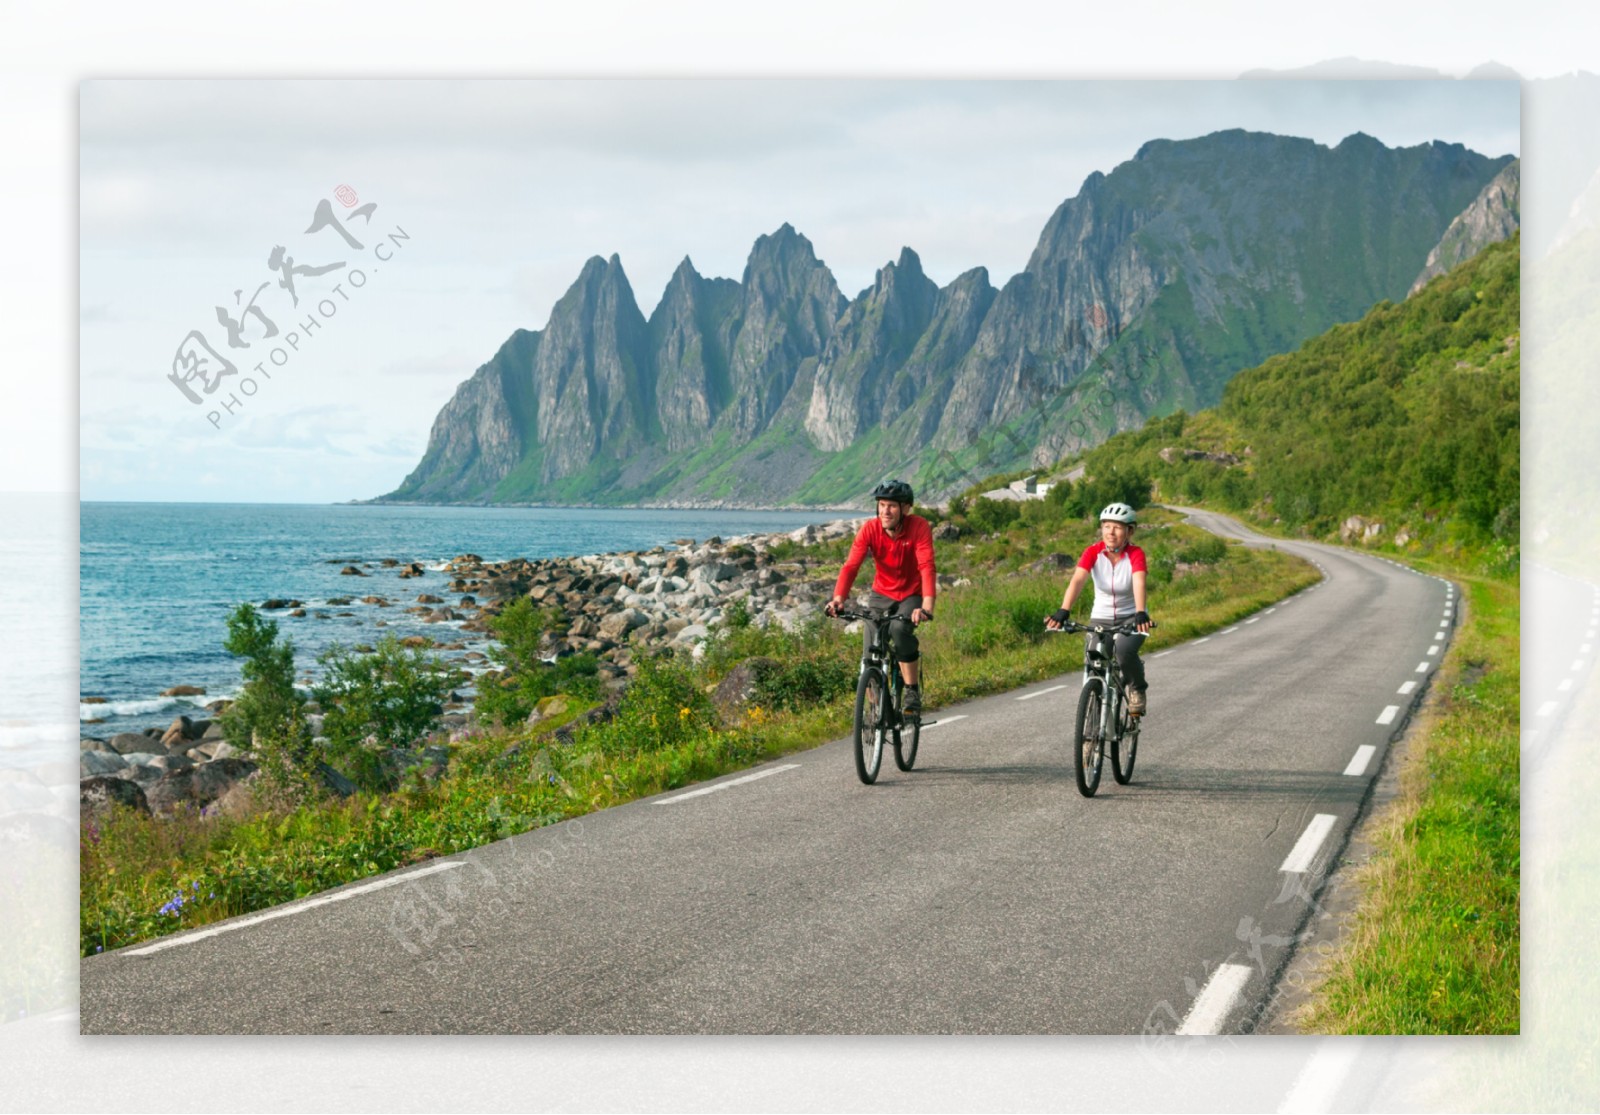 海岸公路风景与自行车运动员